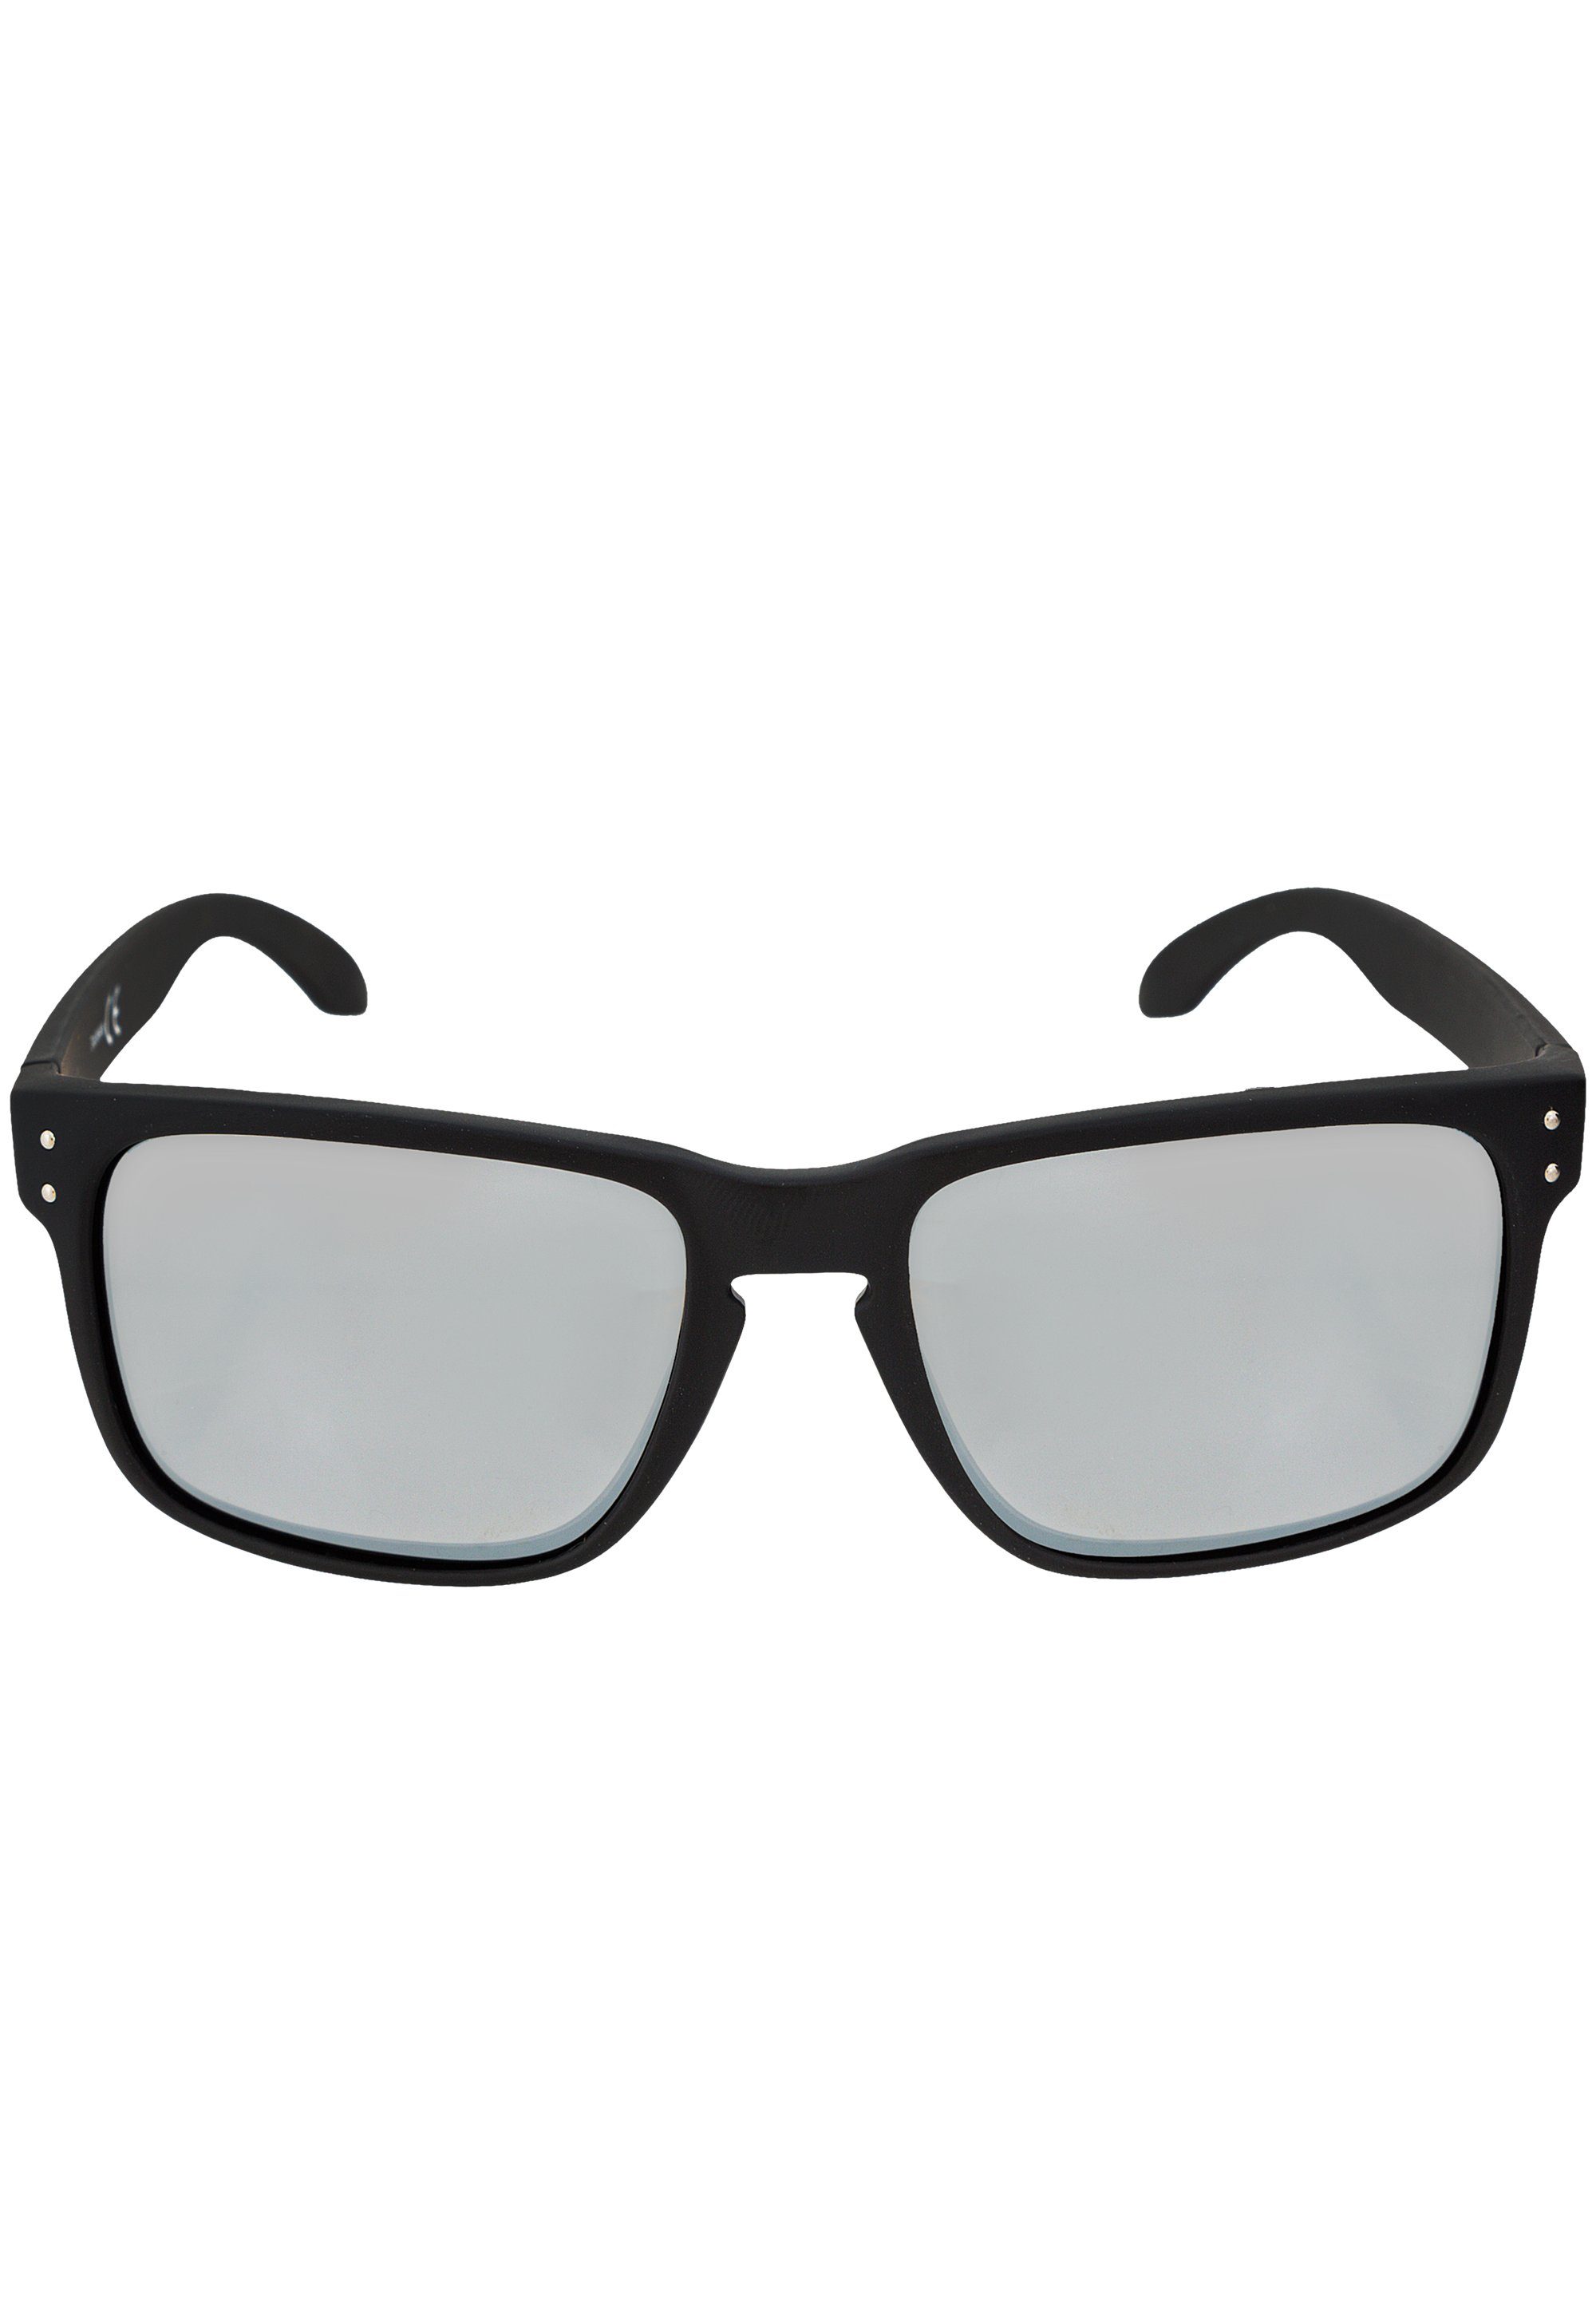 ENDURANCE Brille Hamm, mit UV-400 Sonnenschutz